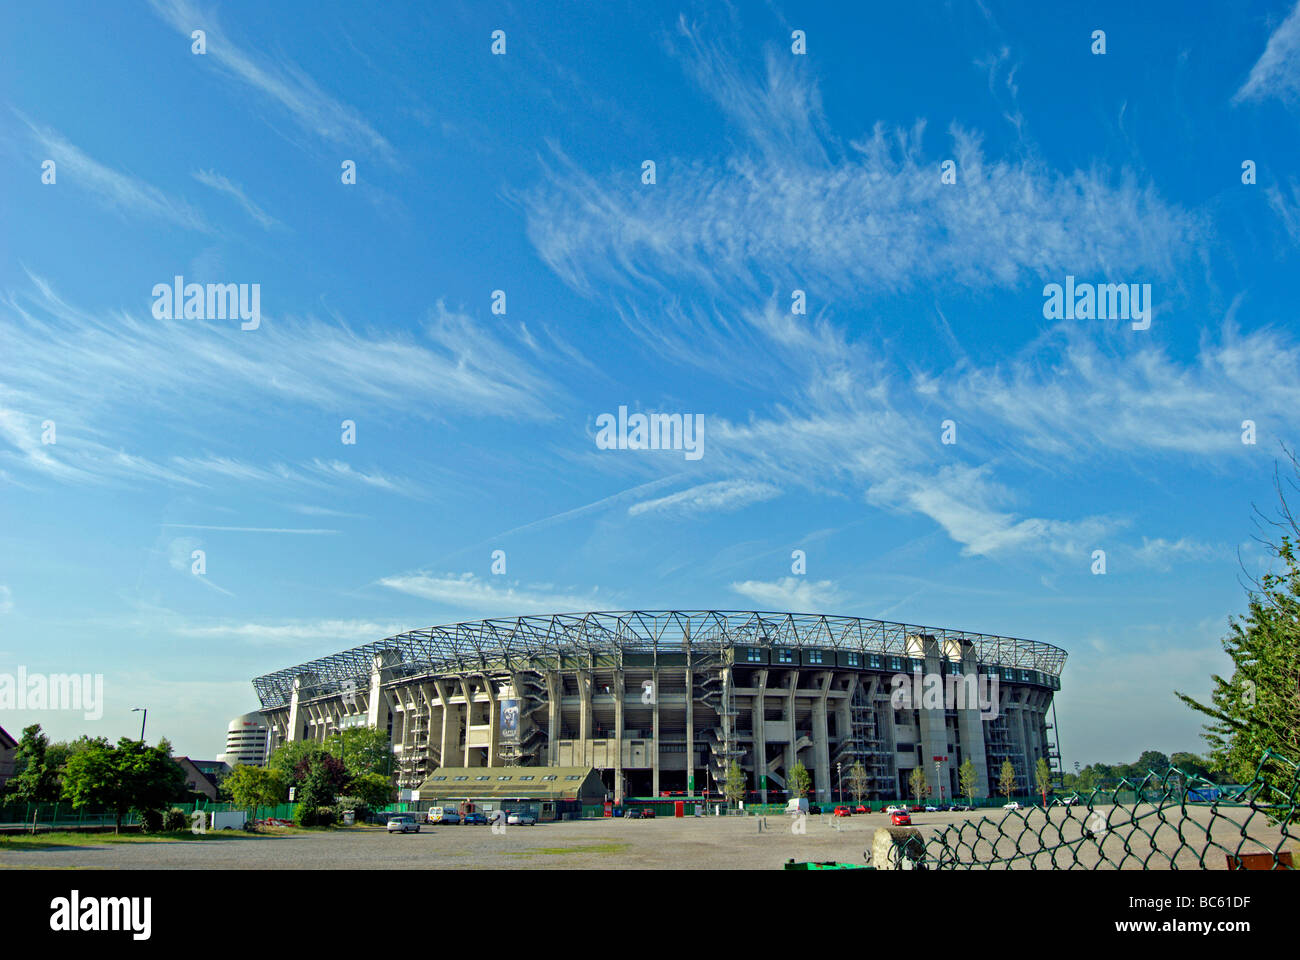 Nordseite des Twickenham Stadium, oder Rugby Ground, Twickenham, Middlesex, England, unter einem blauen Himmel mit hohen wispy cirrostratus Wolken Stockfoto